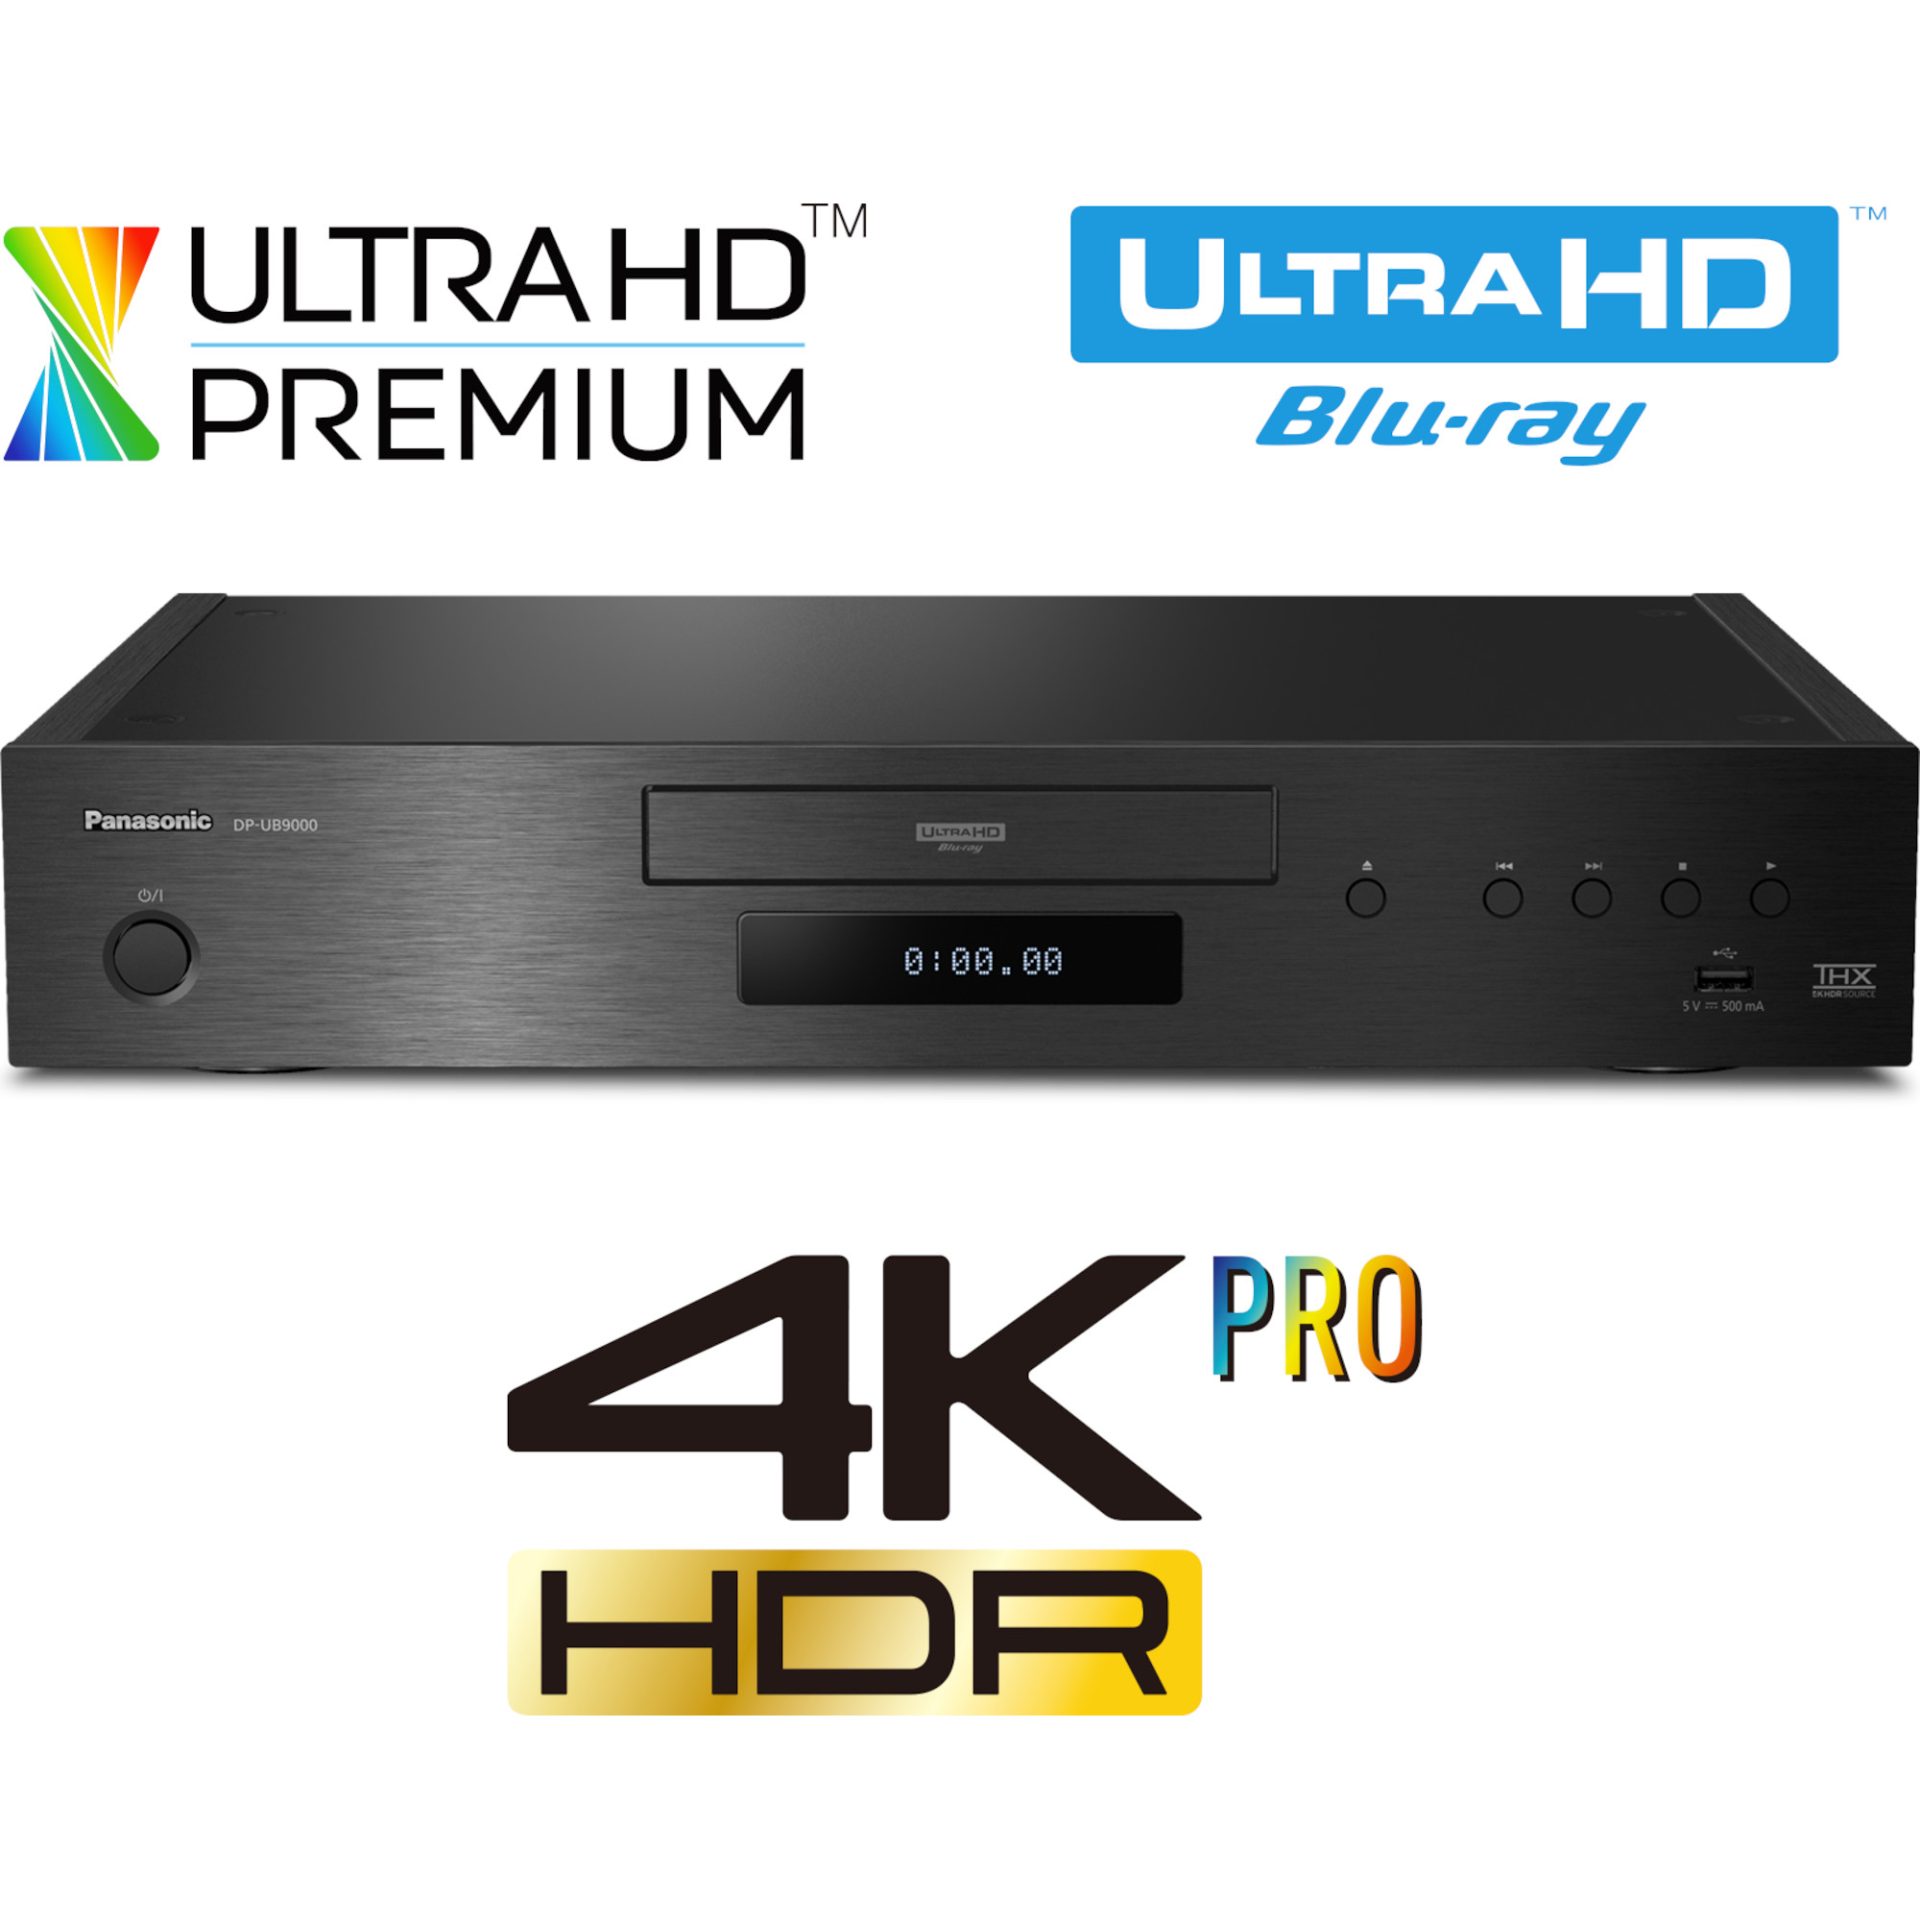 Panasonic DP-UB9000 Ultra HD blu-ray přehrávač (HCX procesor, HDR 10+, Dolby Vision, 2x HDMI, podpora 4K, 4K VOD služby), černá